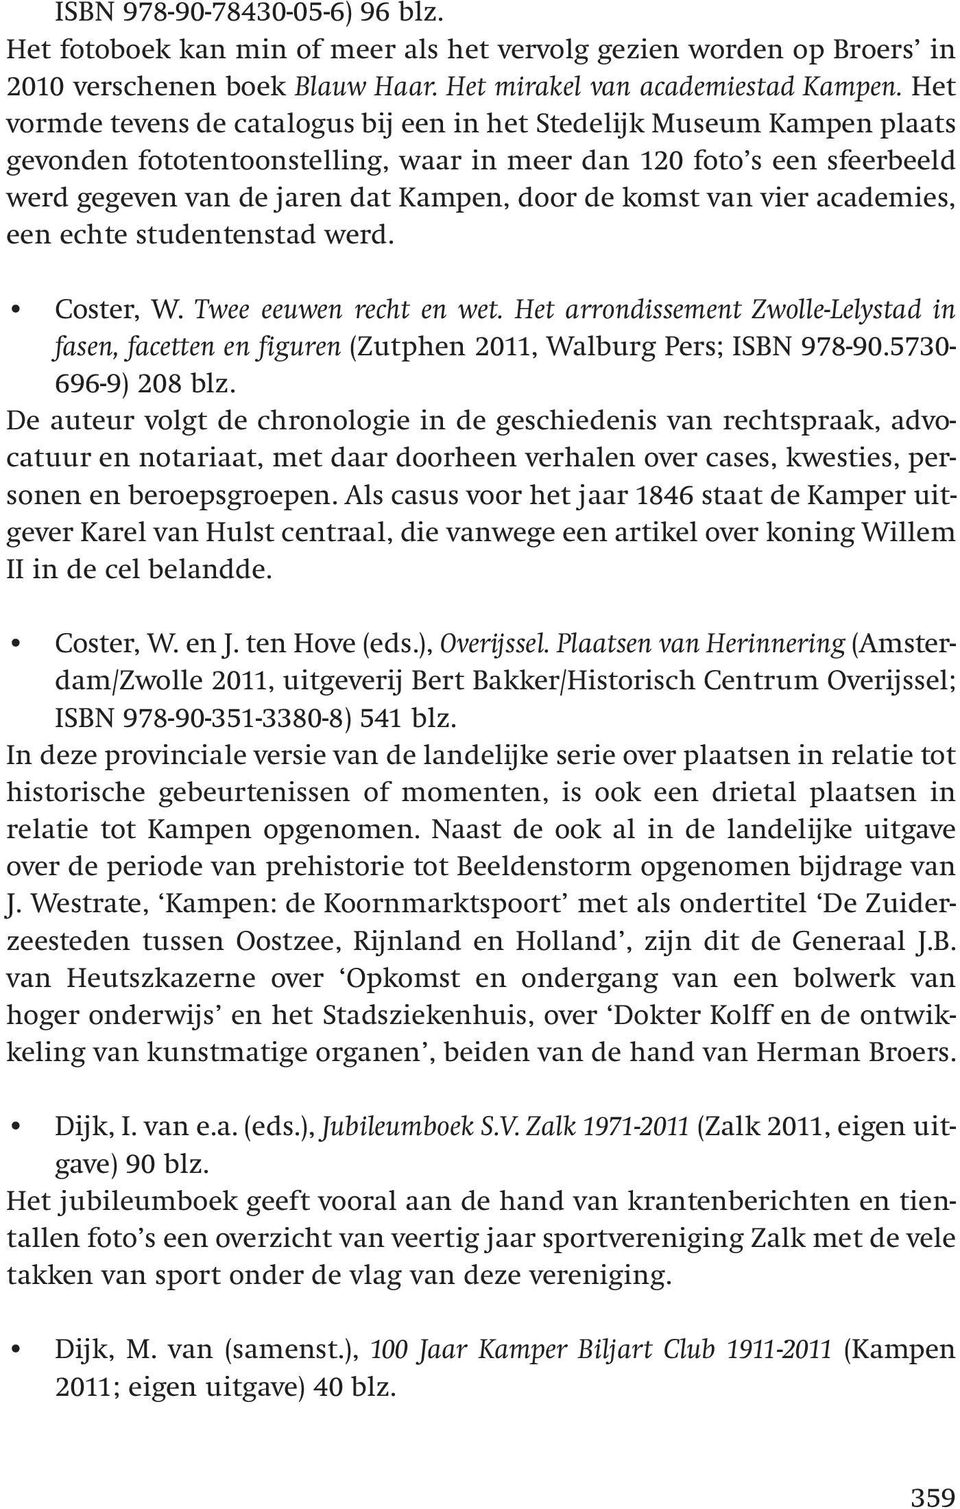 komst van vier academies, een echte studentenstad werd. Coster, W. Twee eeuwen recht en wet. Het arrondissement Zwolle-Lelystad in fasen, facetten en figuren (Zutphen 2011, Walburg Pers; ISBN 978-90.